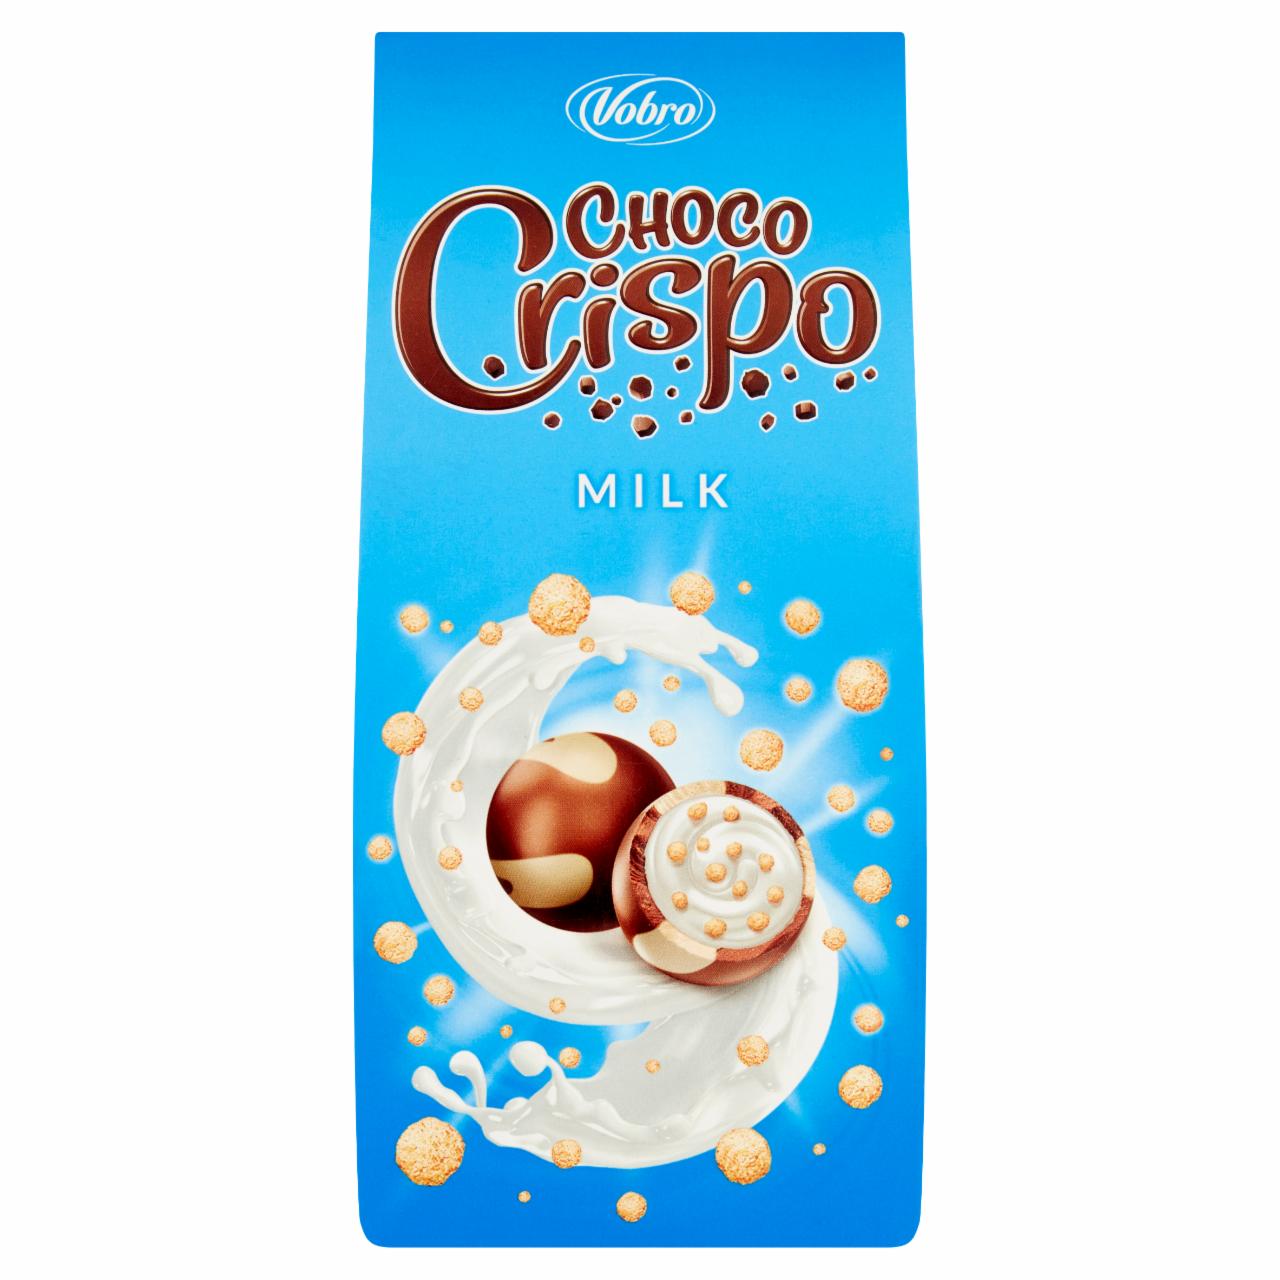 Zdjęcia - Vobro Choco Crispo Praliny z czekolady nadziewane kremem mlecznym i chrupkami 90 g